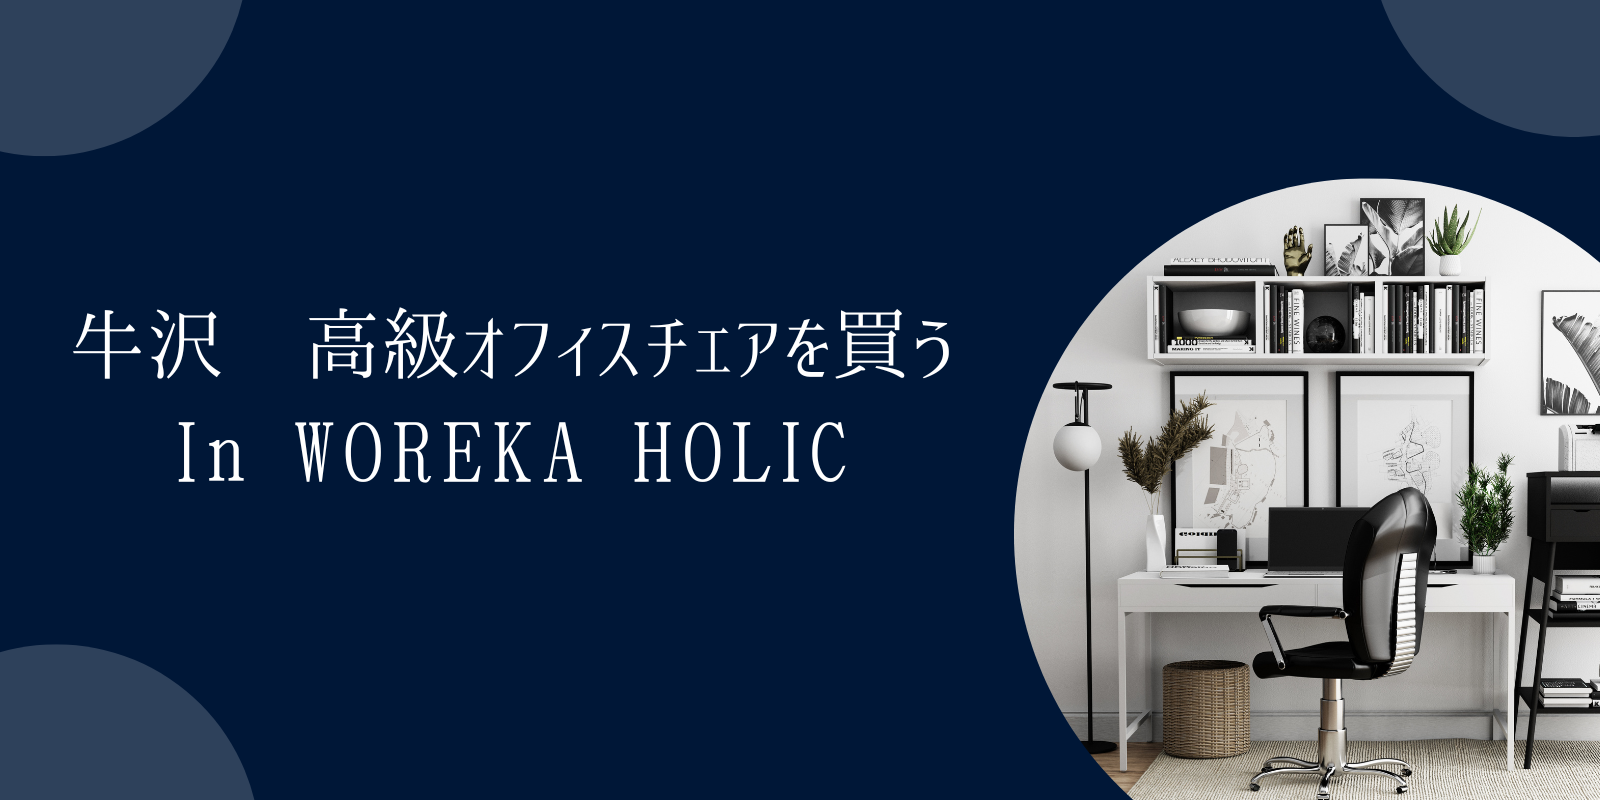 【牛沢】ワークチェア専門店-WORKAHOLIC-ワーカホリック-で高級オフィスチェアを買う